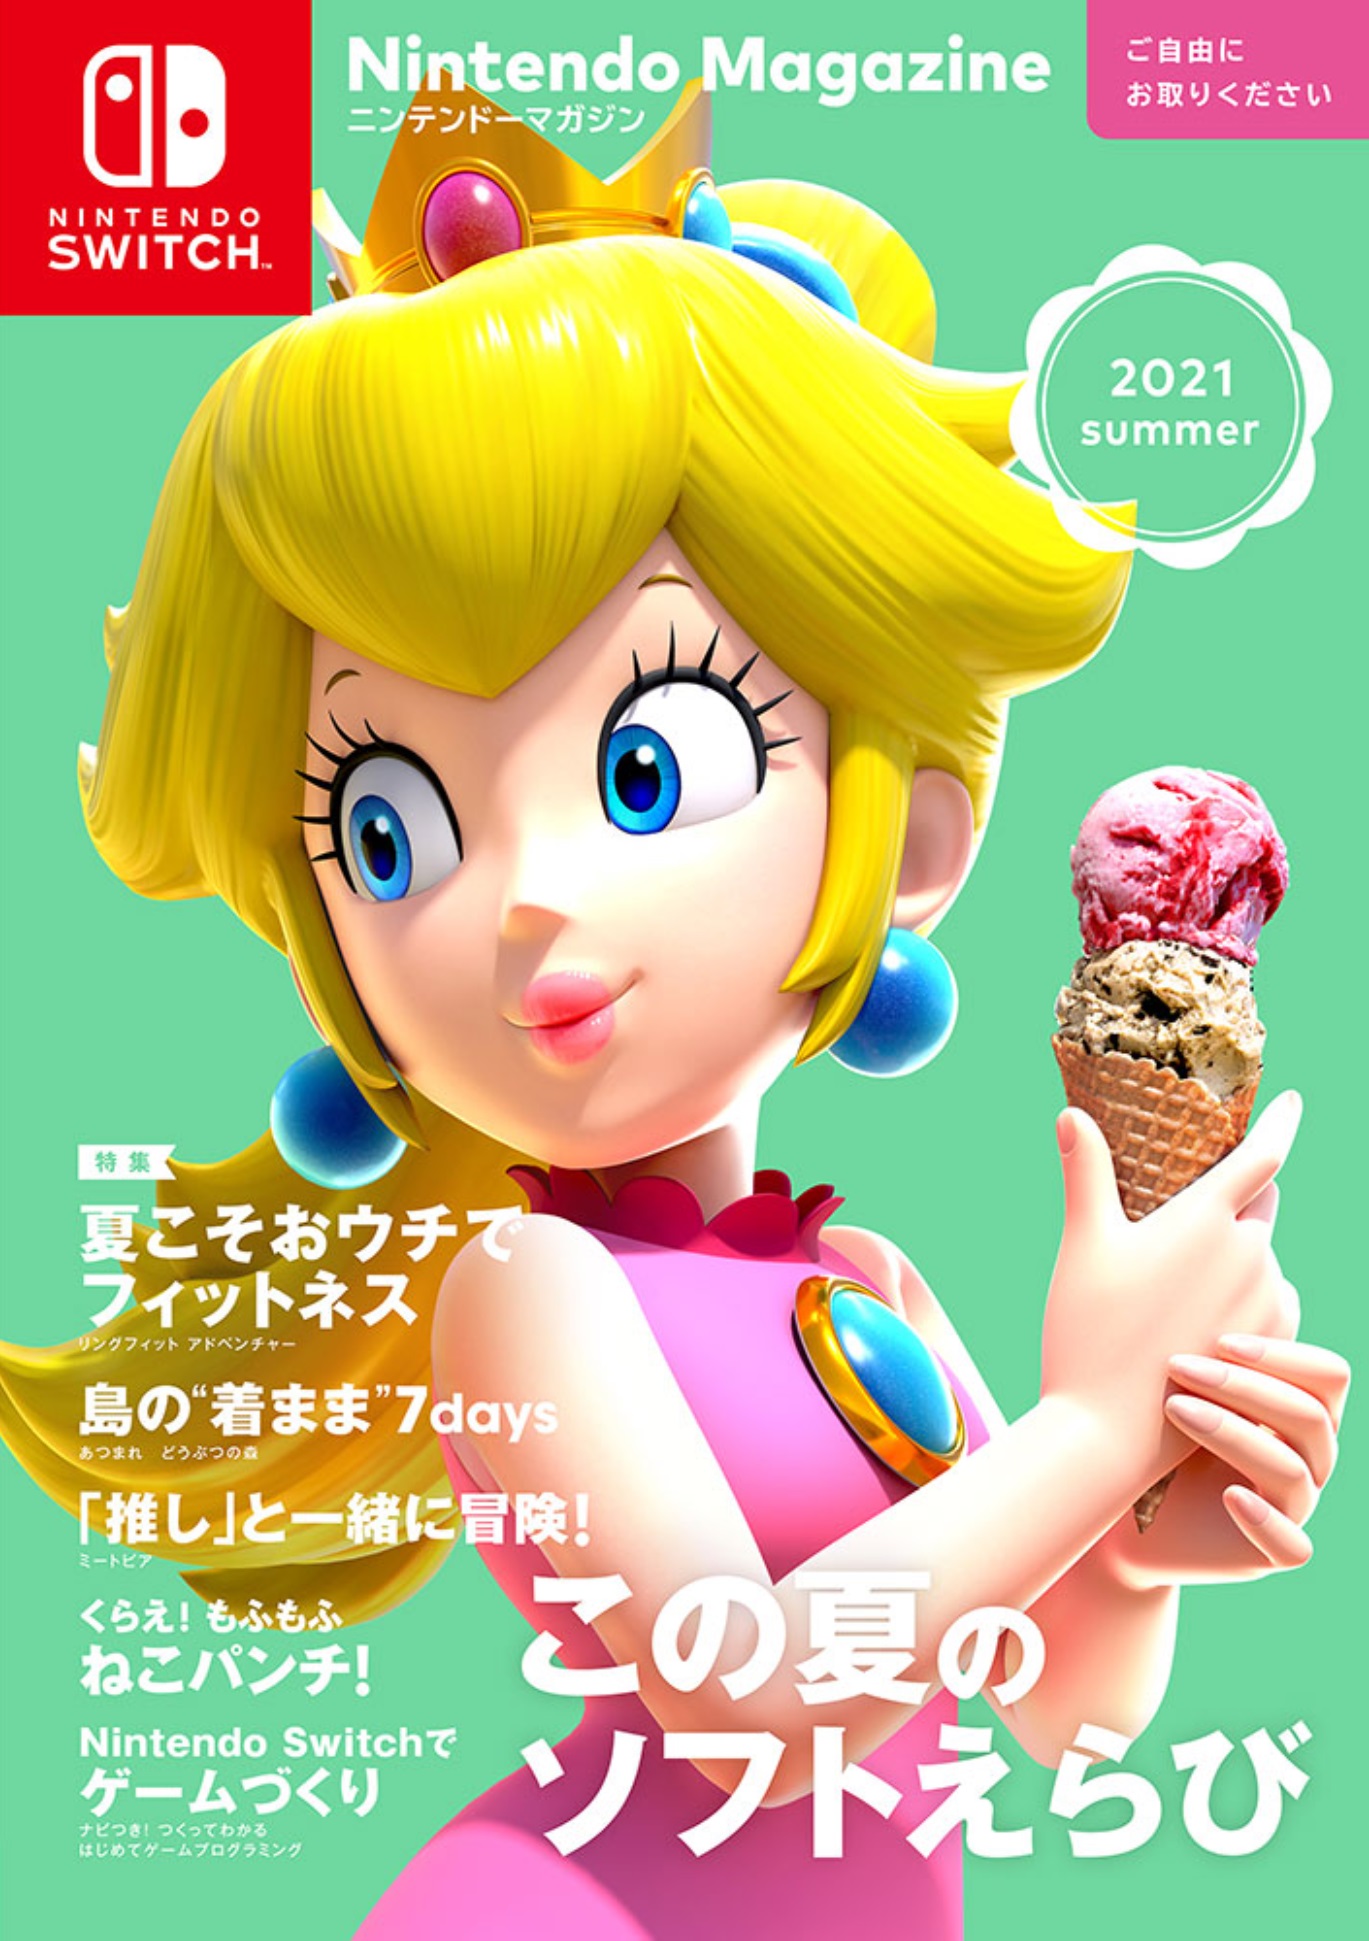 任天堂在官方雜誌「Nintendo Magazine 2021 Summer」中推薦 12 款遊戲。